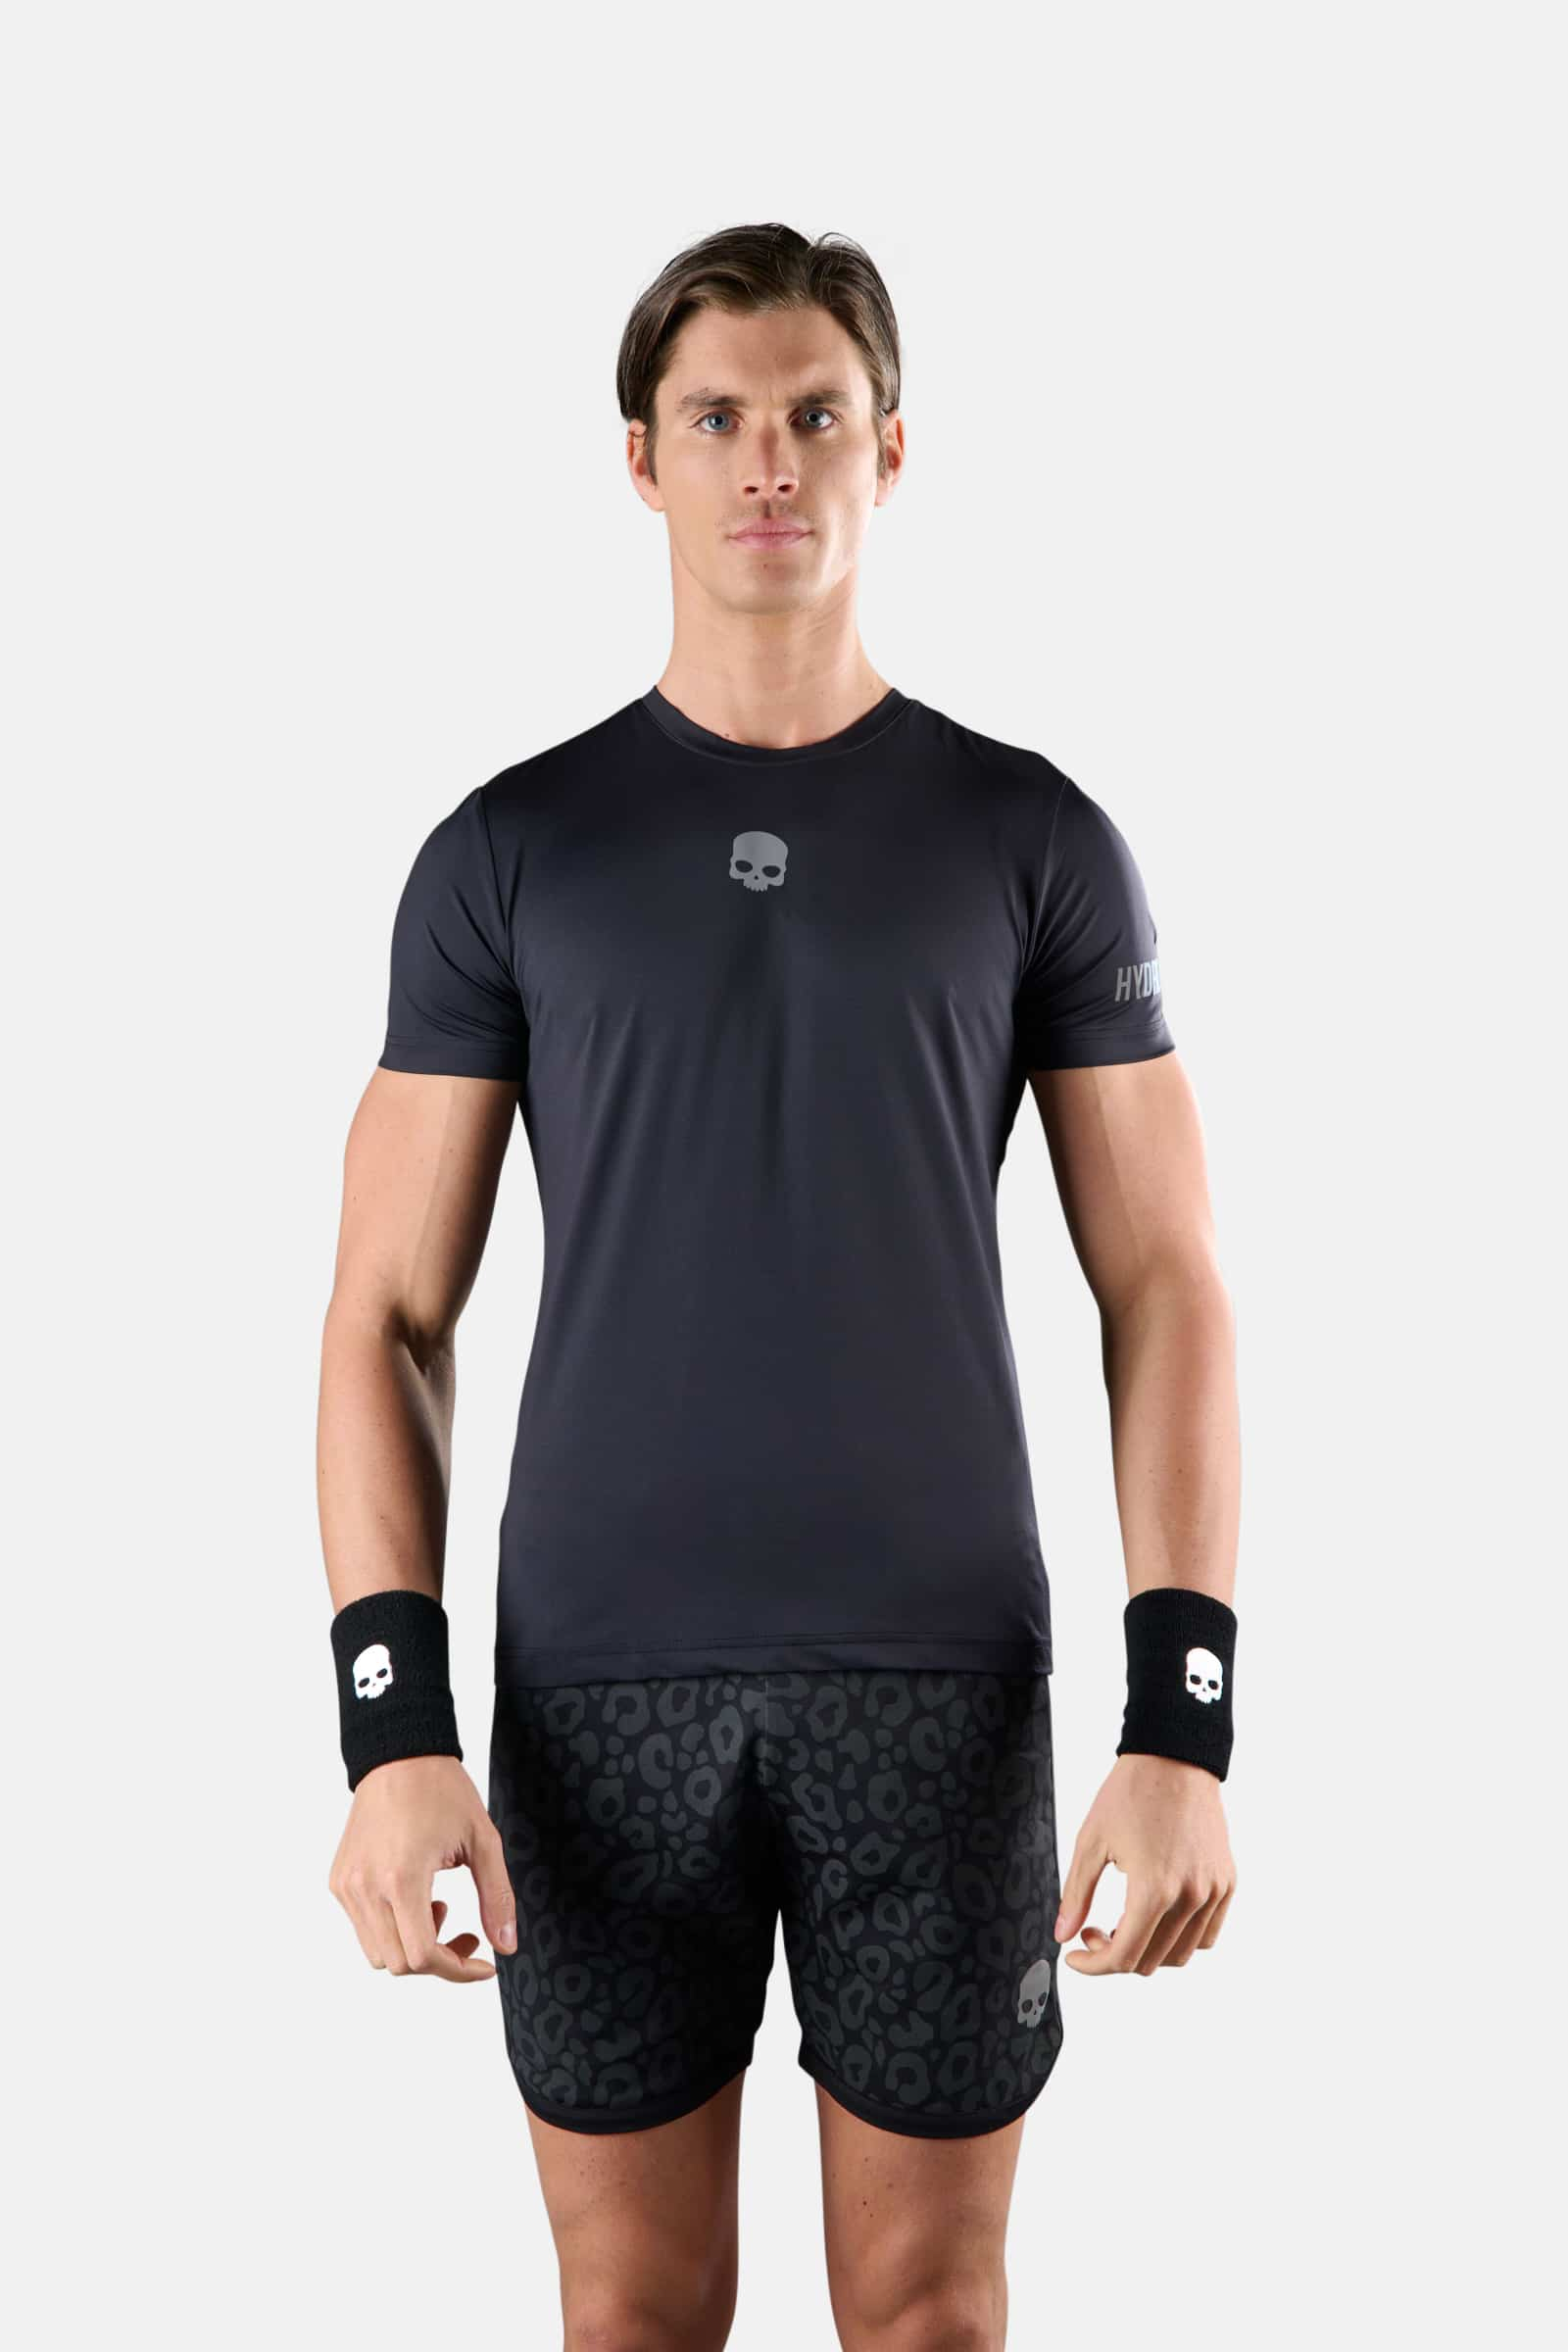 T-SHIRT TECNICA PANTHER - Abbigliamento - Abbigliamento sportivo | Hydrogen